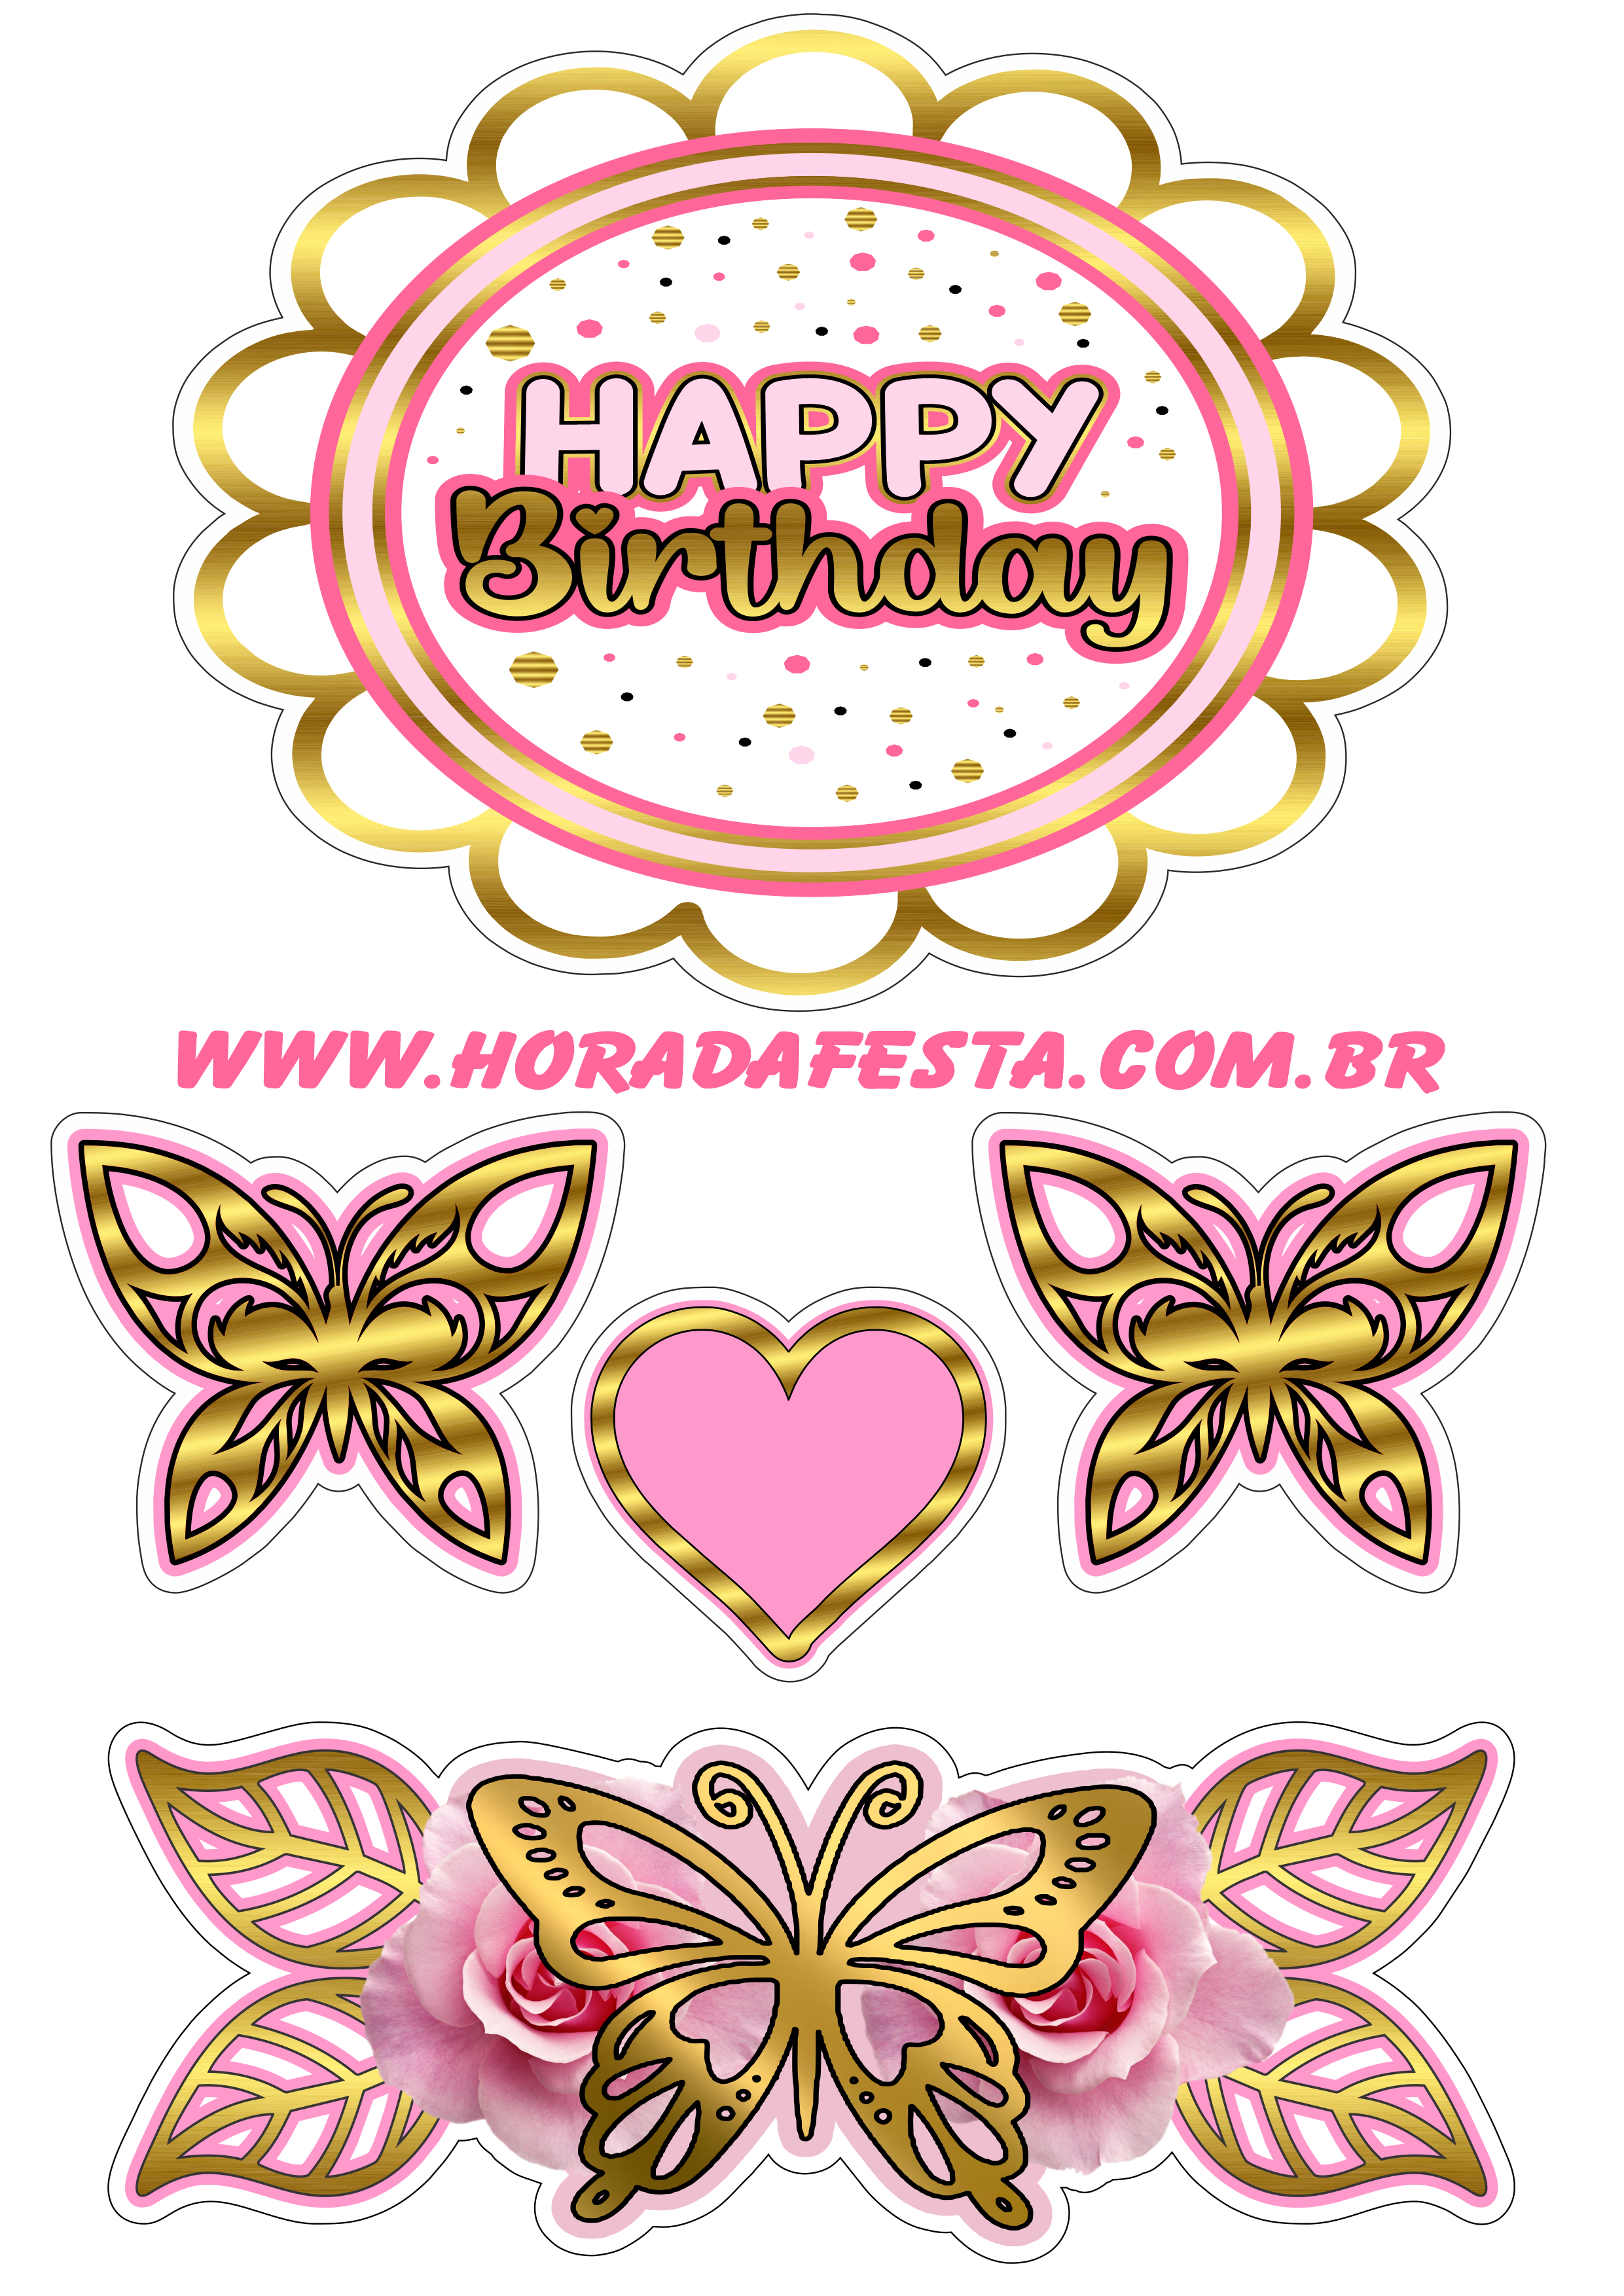 Happy birthday topo de bolo de aniversário dourado com rosa corações borboletas e flores renda extra com festas png